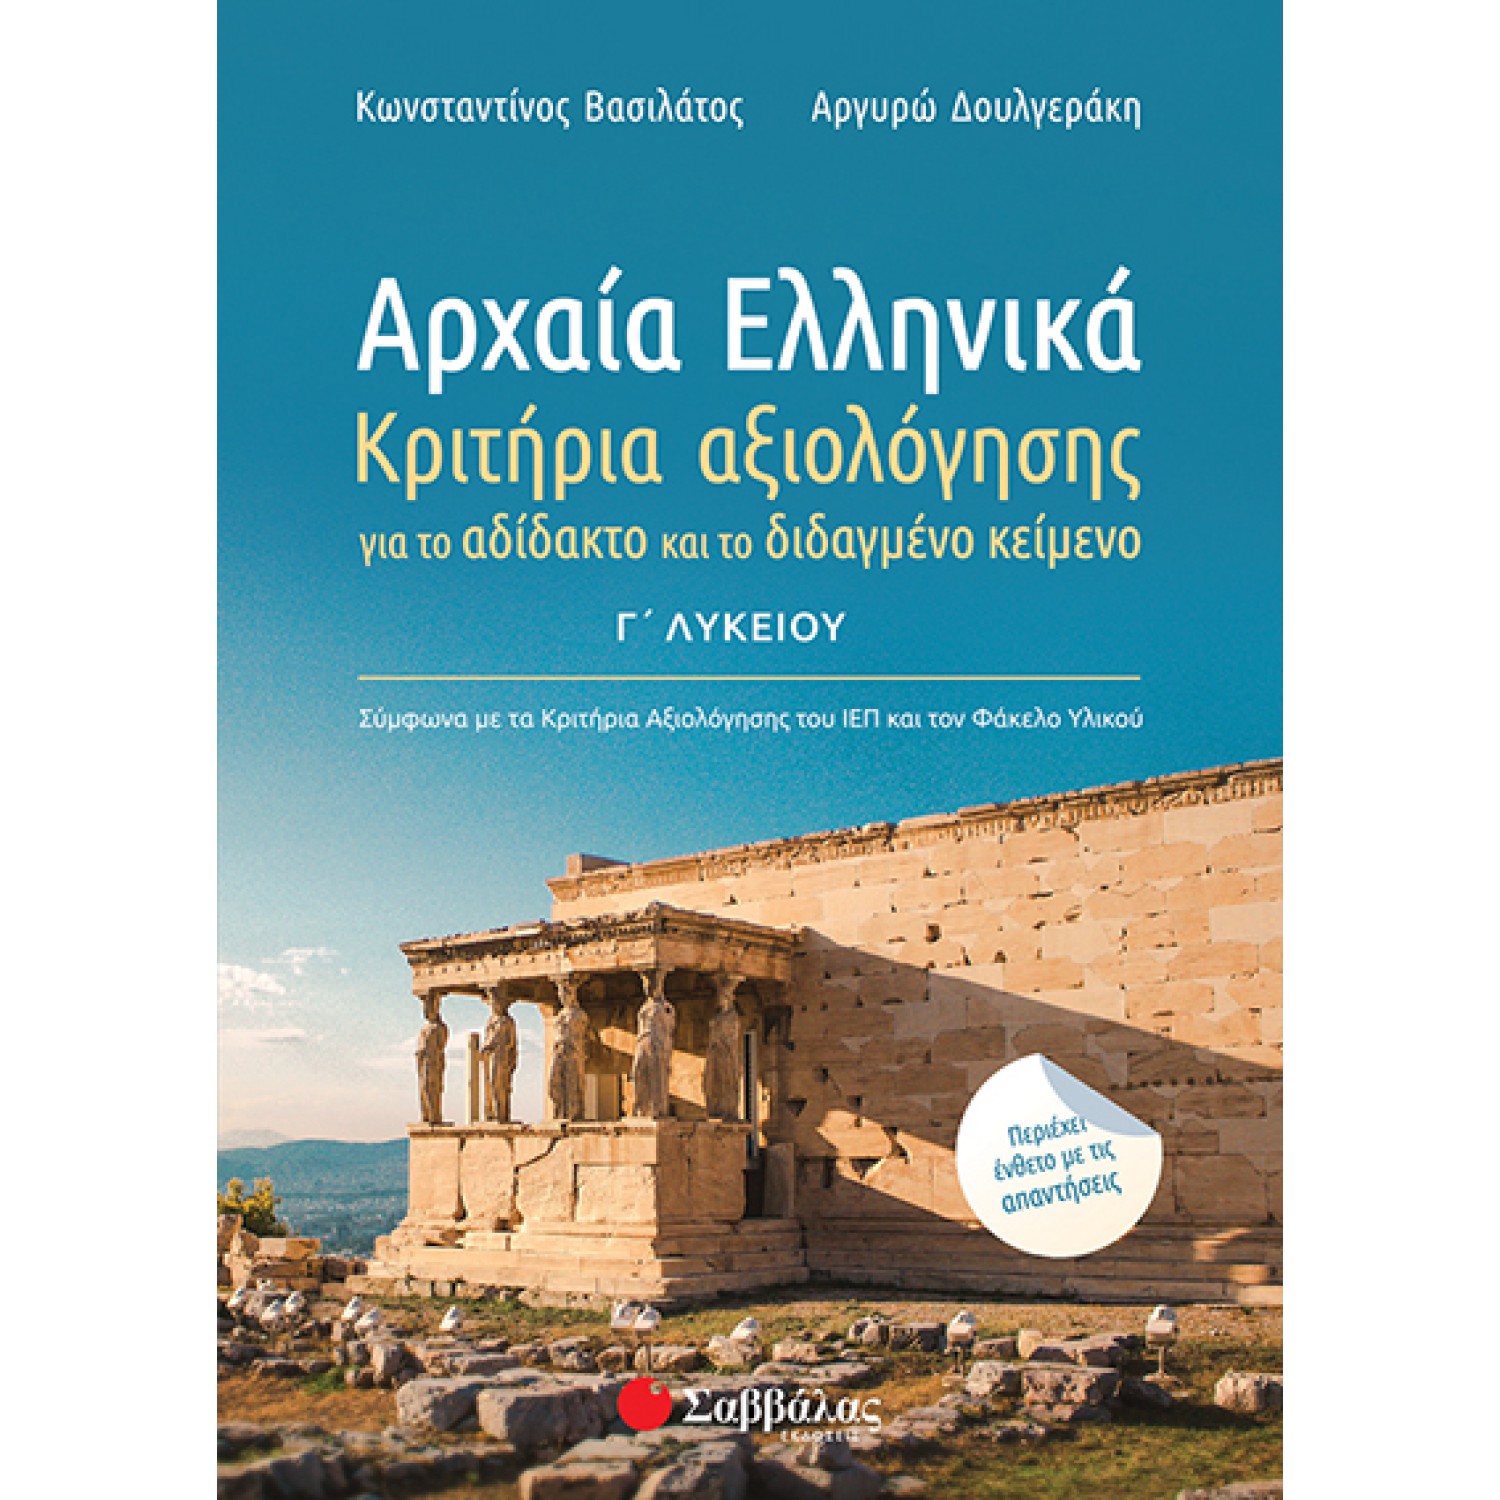  Αρχαία Ελληνικά Γ’ Λυκείου: Κριτήρια αξιολόγησης για το αδίδακτο και το διδαγμένο κείμενο. 